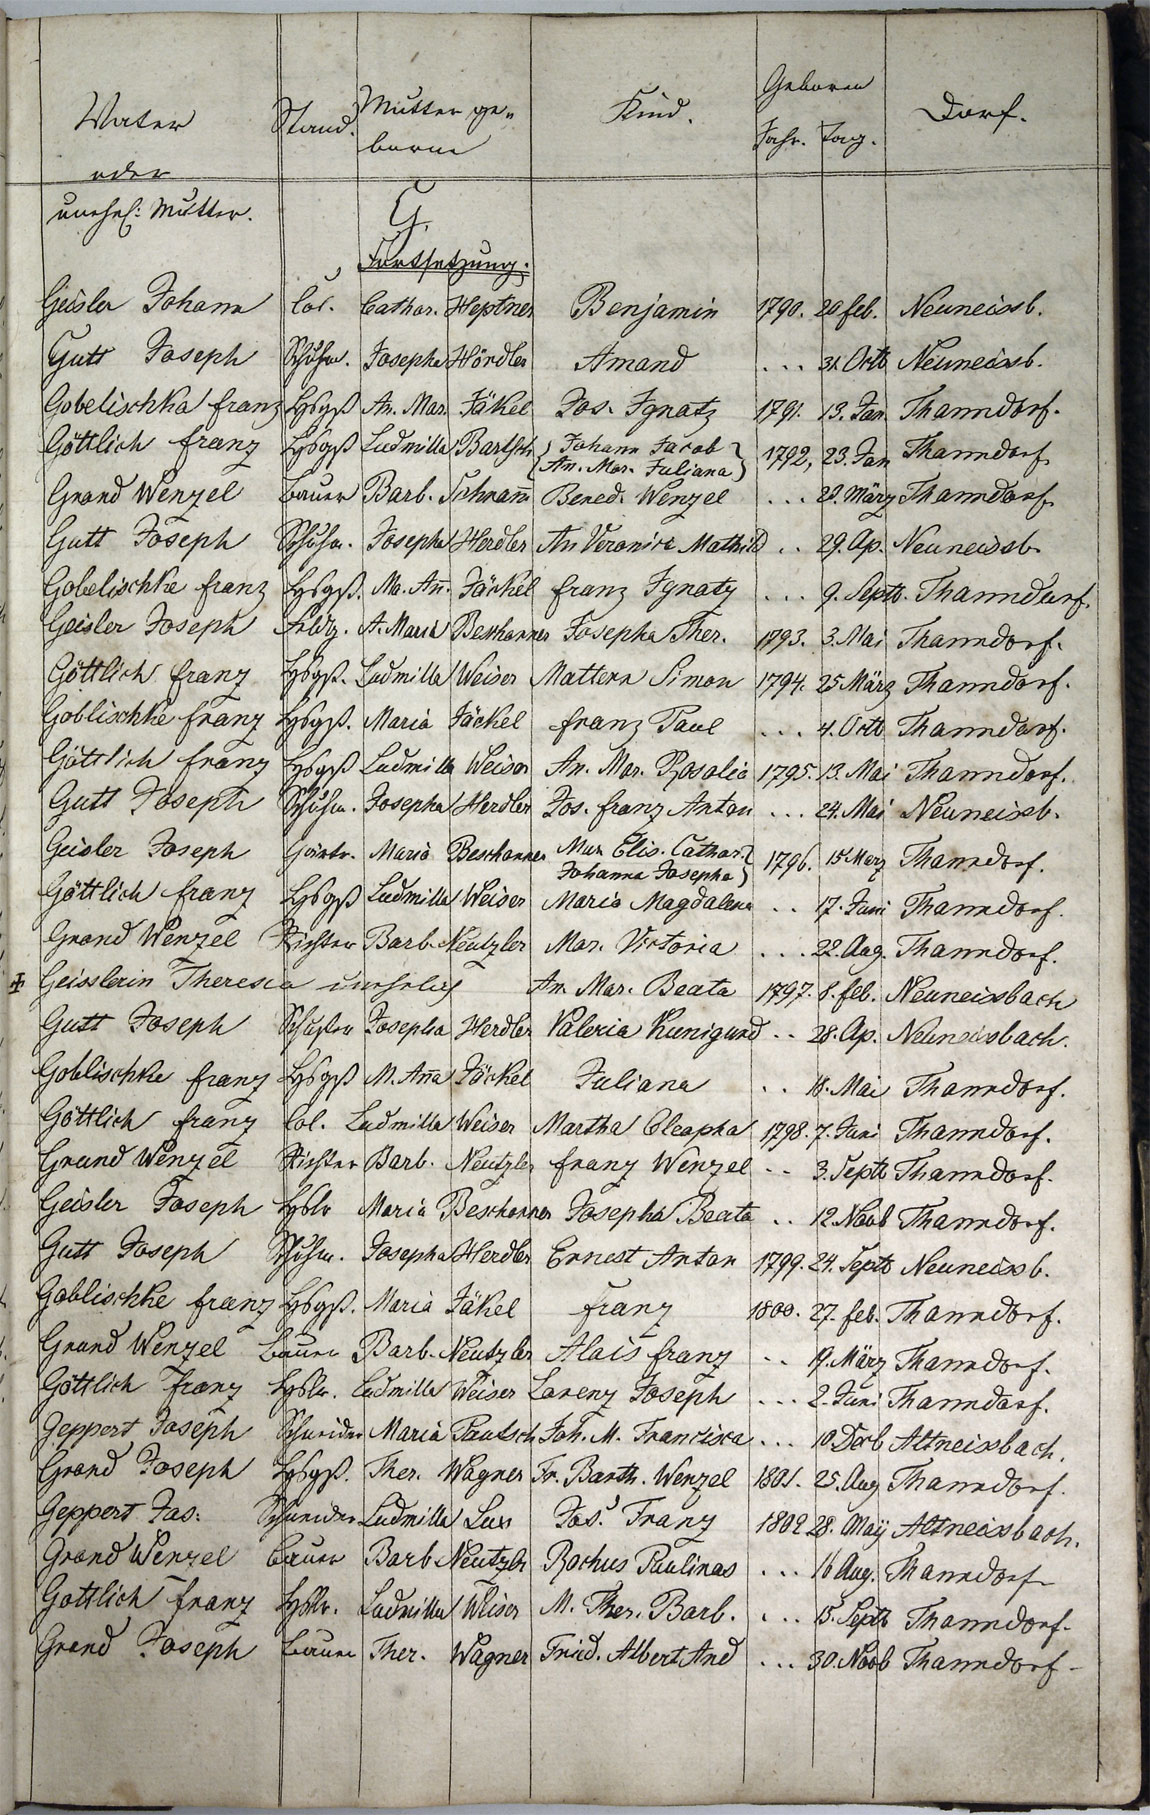 Taufregister 1770 - 1889 Seite 37